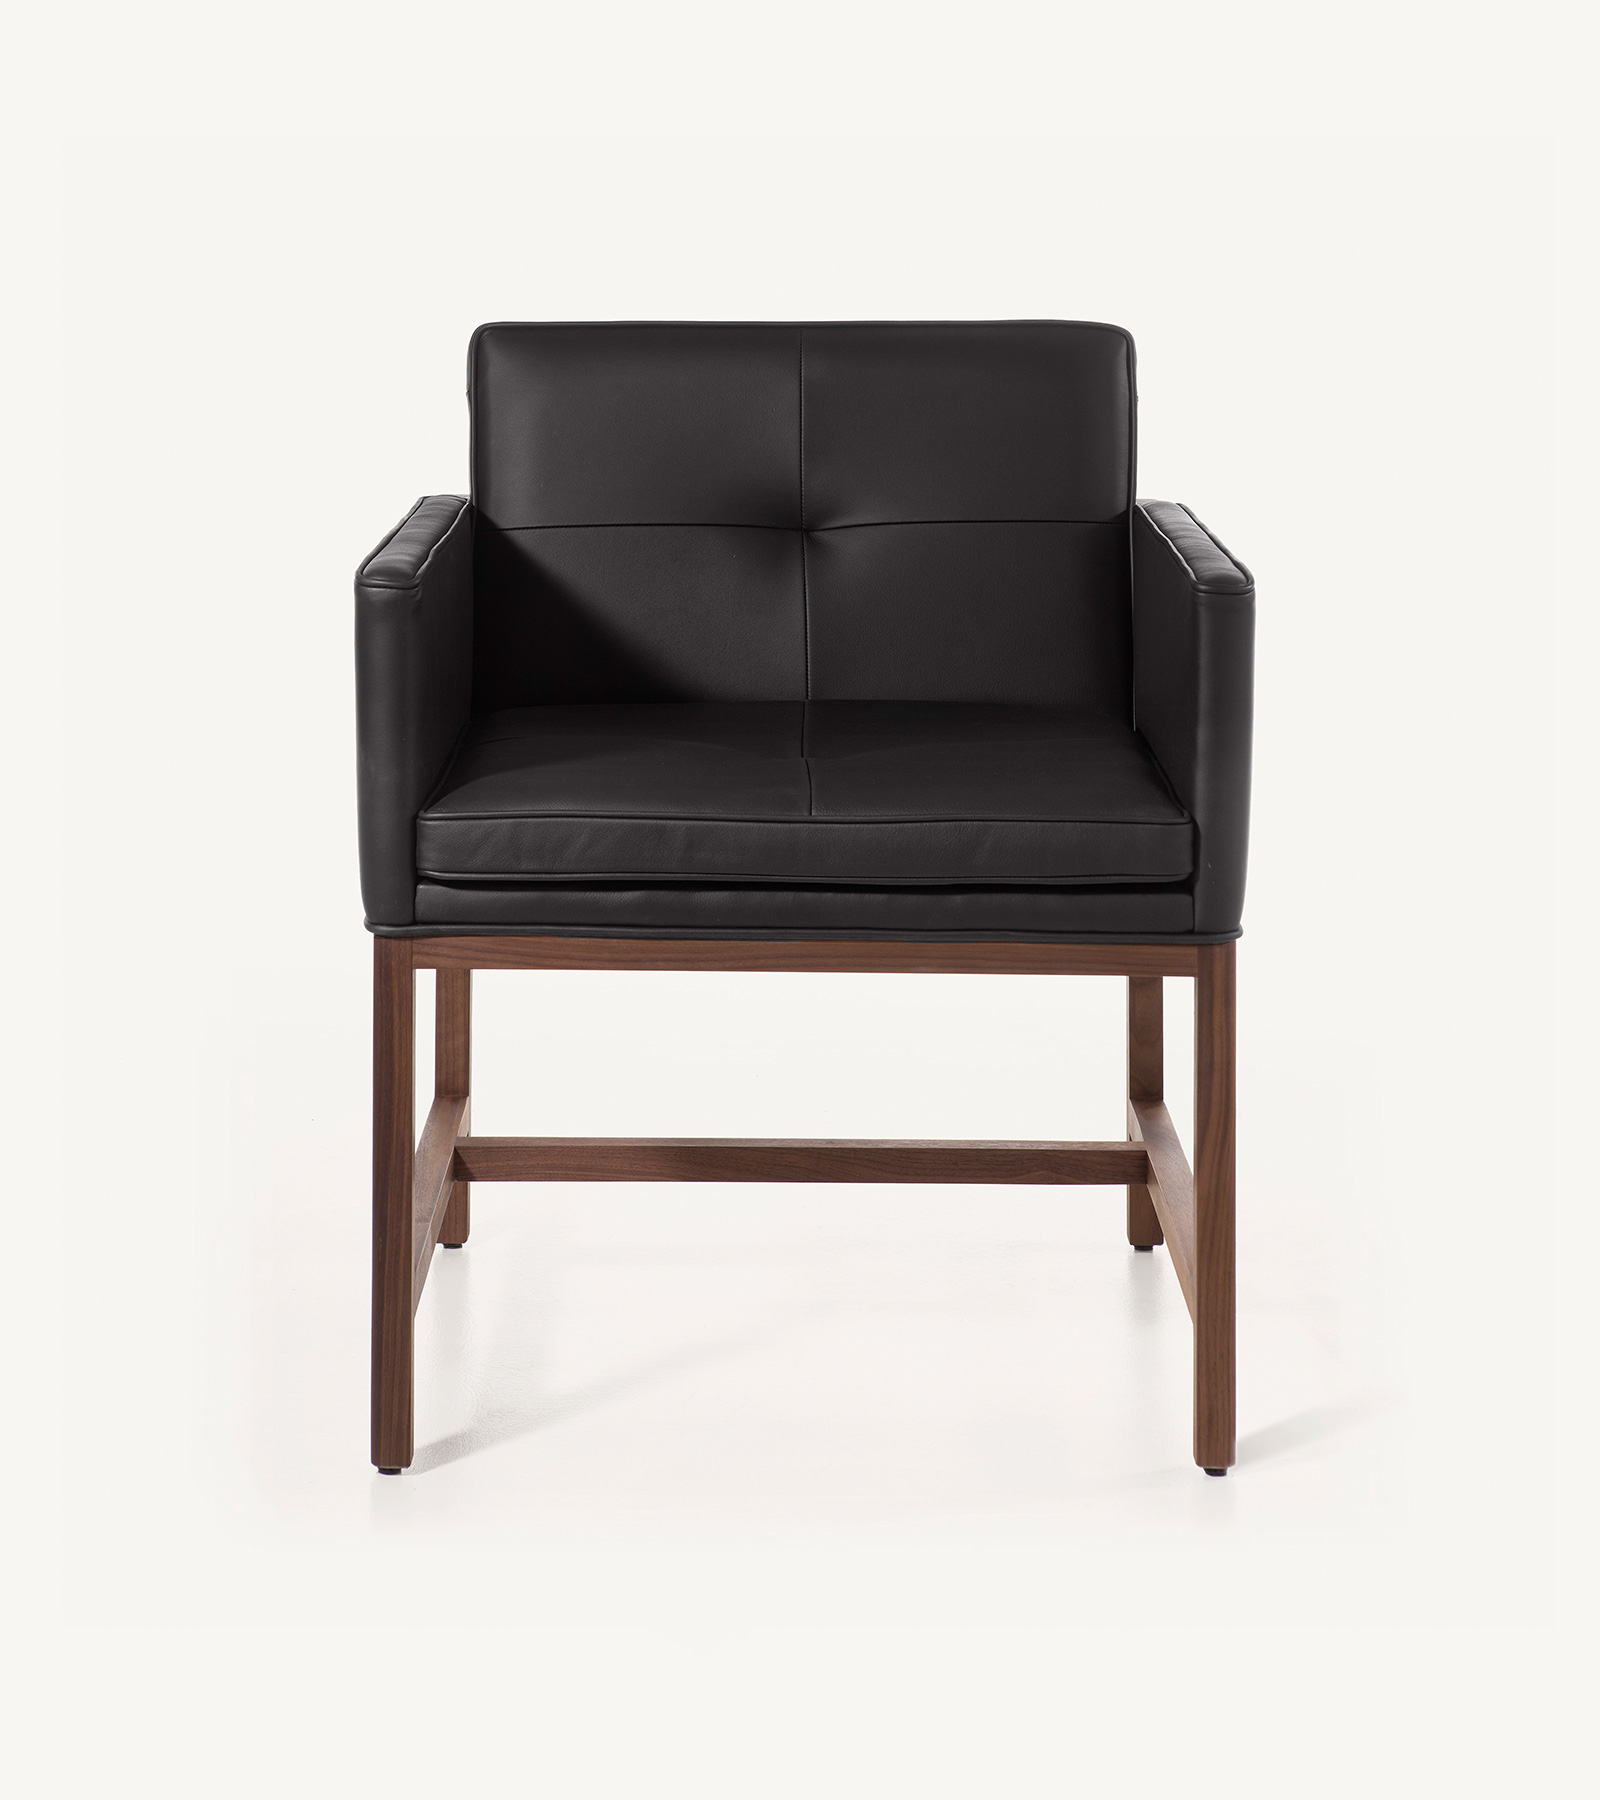 TinnappleMetz-bassamfellows-Wood-Frame-Chair-02